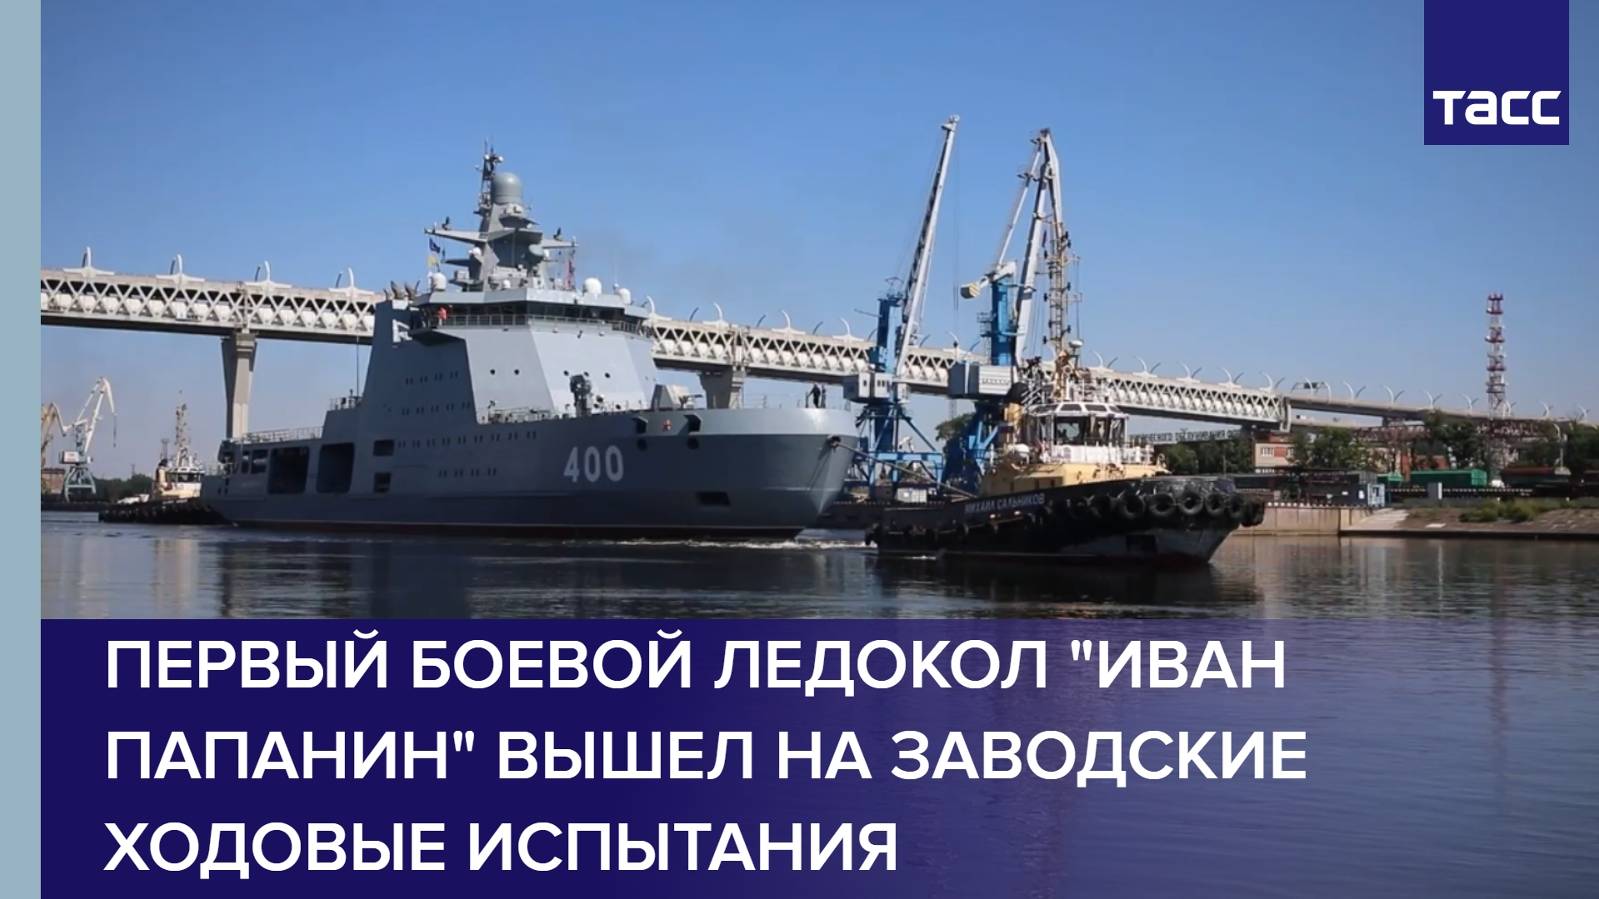 Первый боевой ледокол "Иван Папанин" вышел на заводские ходовые испытания